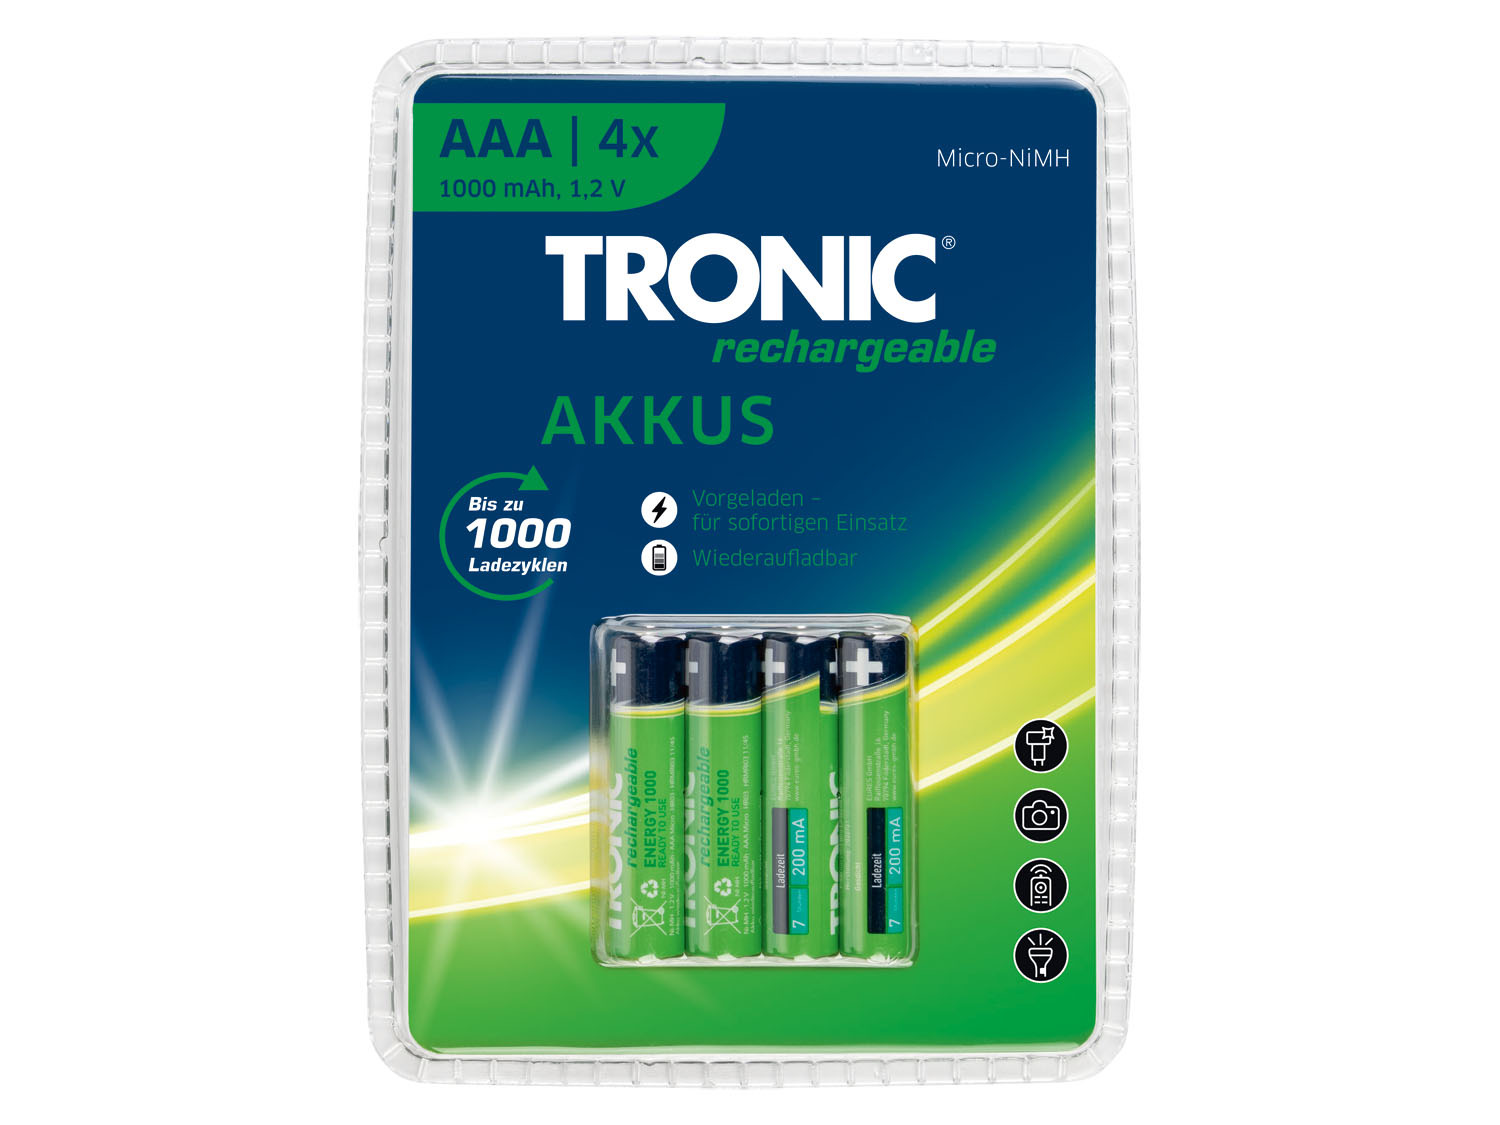 Tropisch erger maken Verschrikkelijk TRONIC® Oplaadbare batterijen online kopen | LIDL